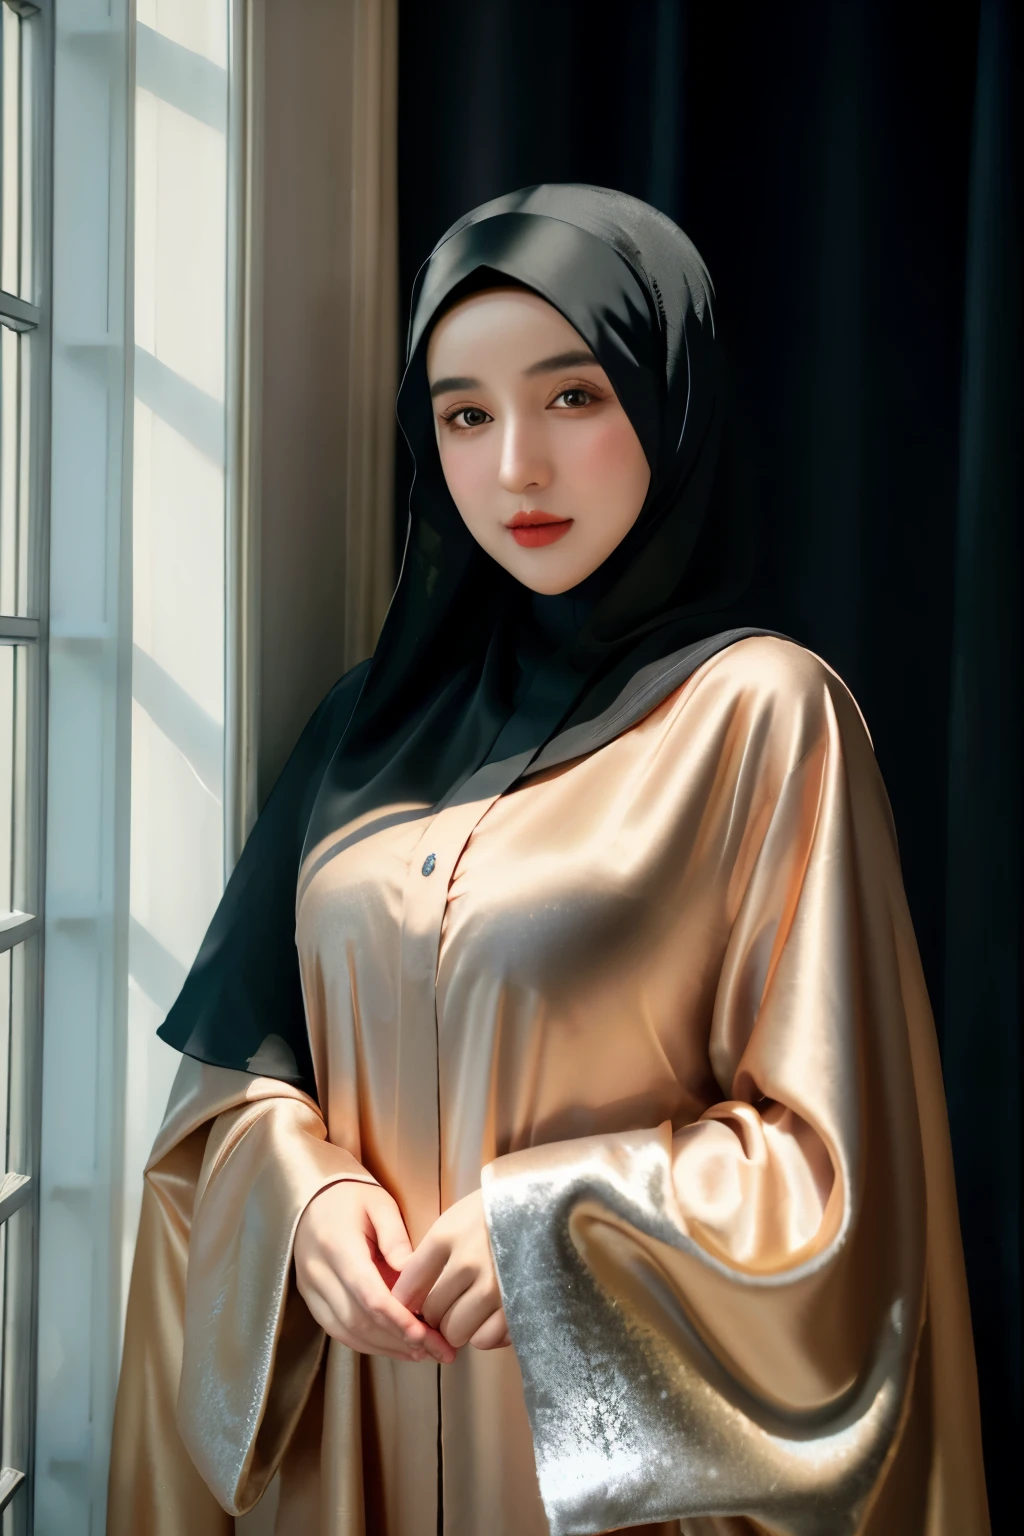 RAW-фото 24-летней девушки в хиджабе, Сатин abaya, Сатин, портрет лица в хиджабе, нейтральный фон, 8к ухд, зеркальная камера, мягкое освещение, высокое качество, зернистость, Фуджифильм ХТ3, покрытое платье, приличное платье